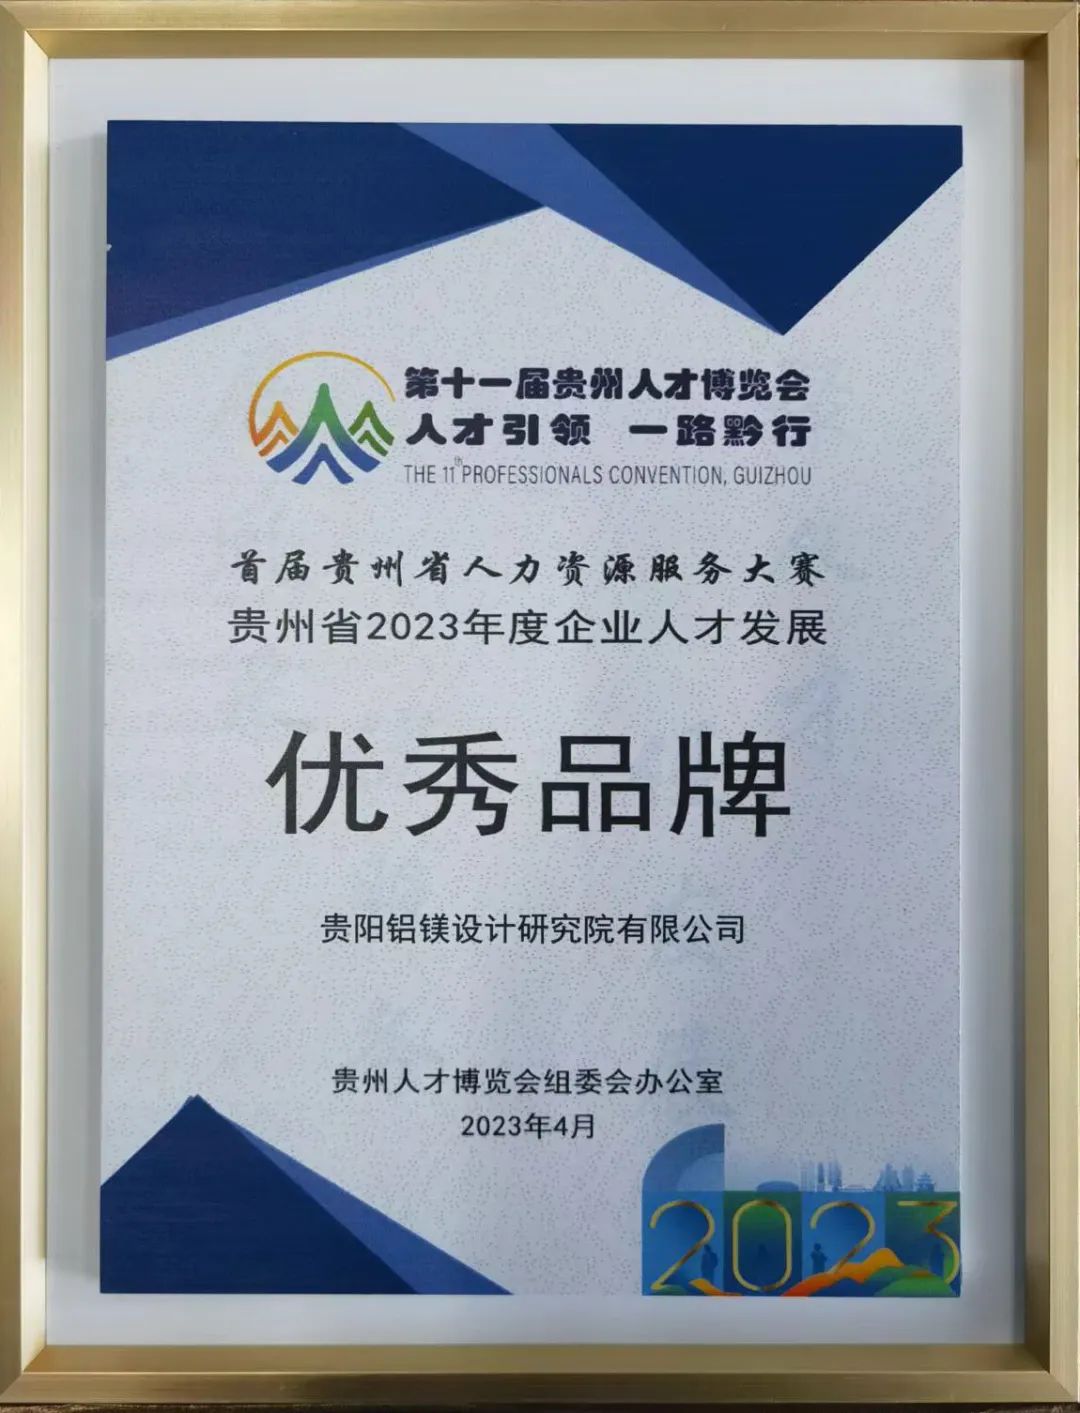 貴陽鋁鎂院被授予貴州省“2023年度企業人才發展優秀品牌”